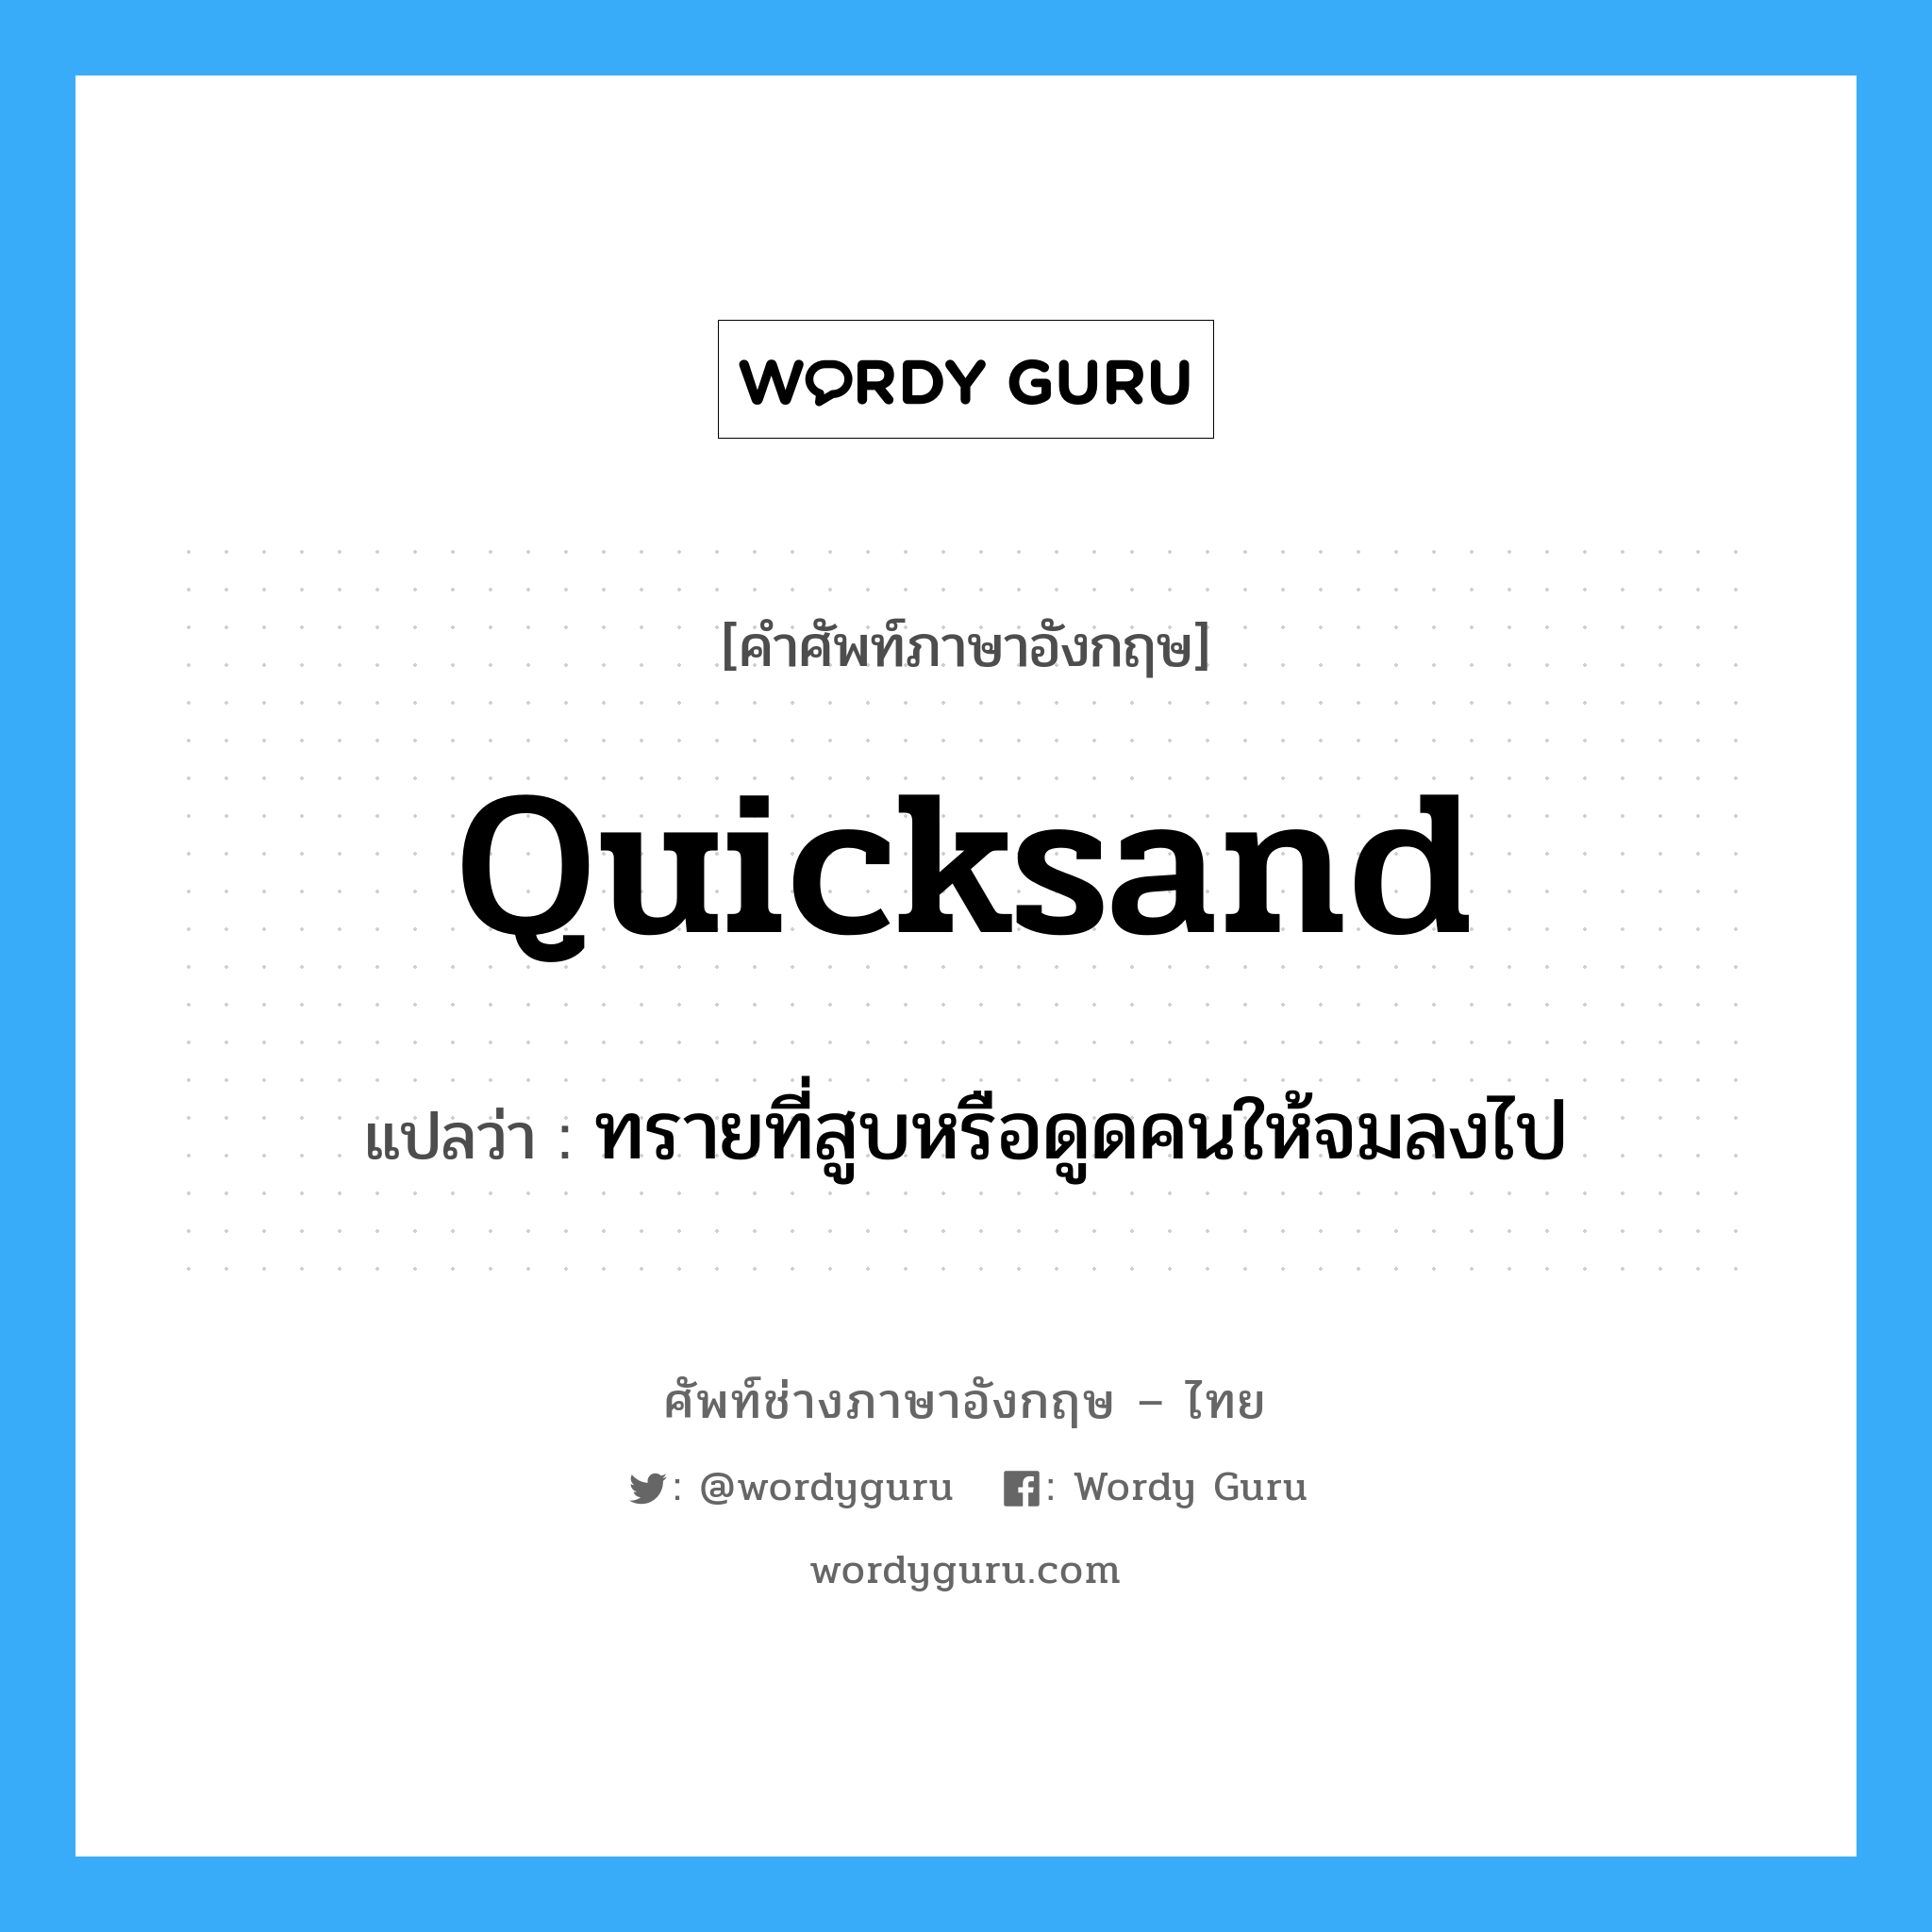 quicksand แปลว่า?, คำศัพท์ช่างภาษาอังกฤษ - ไทย quicksand คำศัพท์ภาษาอังกฤษ quicksand แปลว่า ทรายที่สูบหรือดูดคนให้จมลงไป